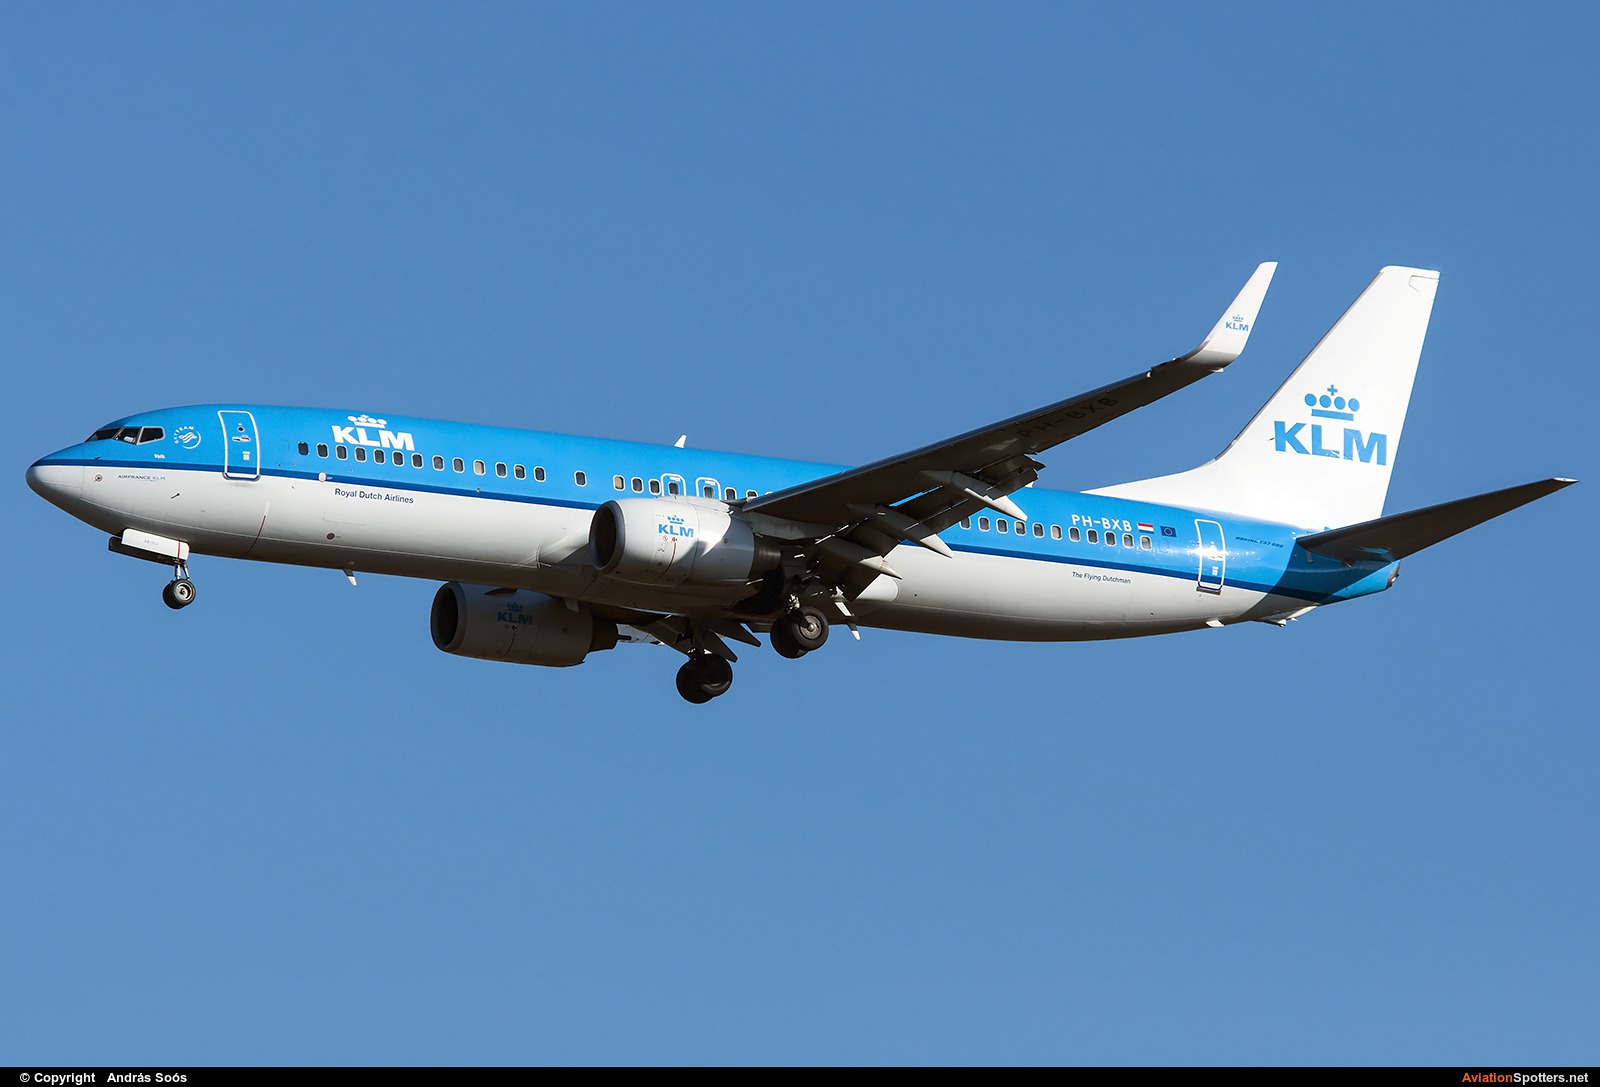 KLM  -  737-800  (PH-BXB) By András Soós (sas1965)